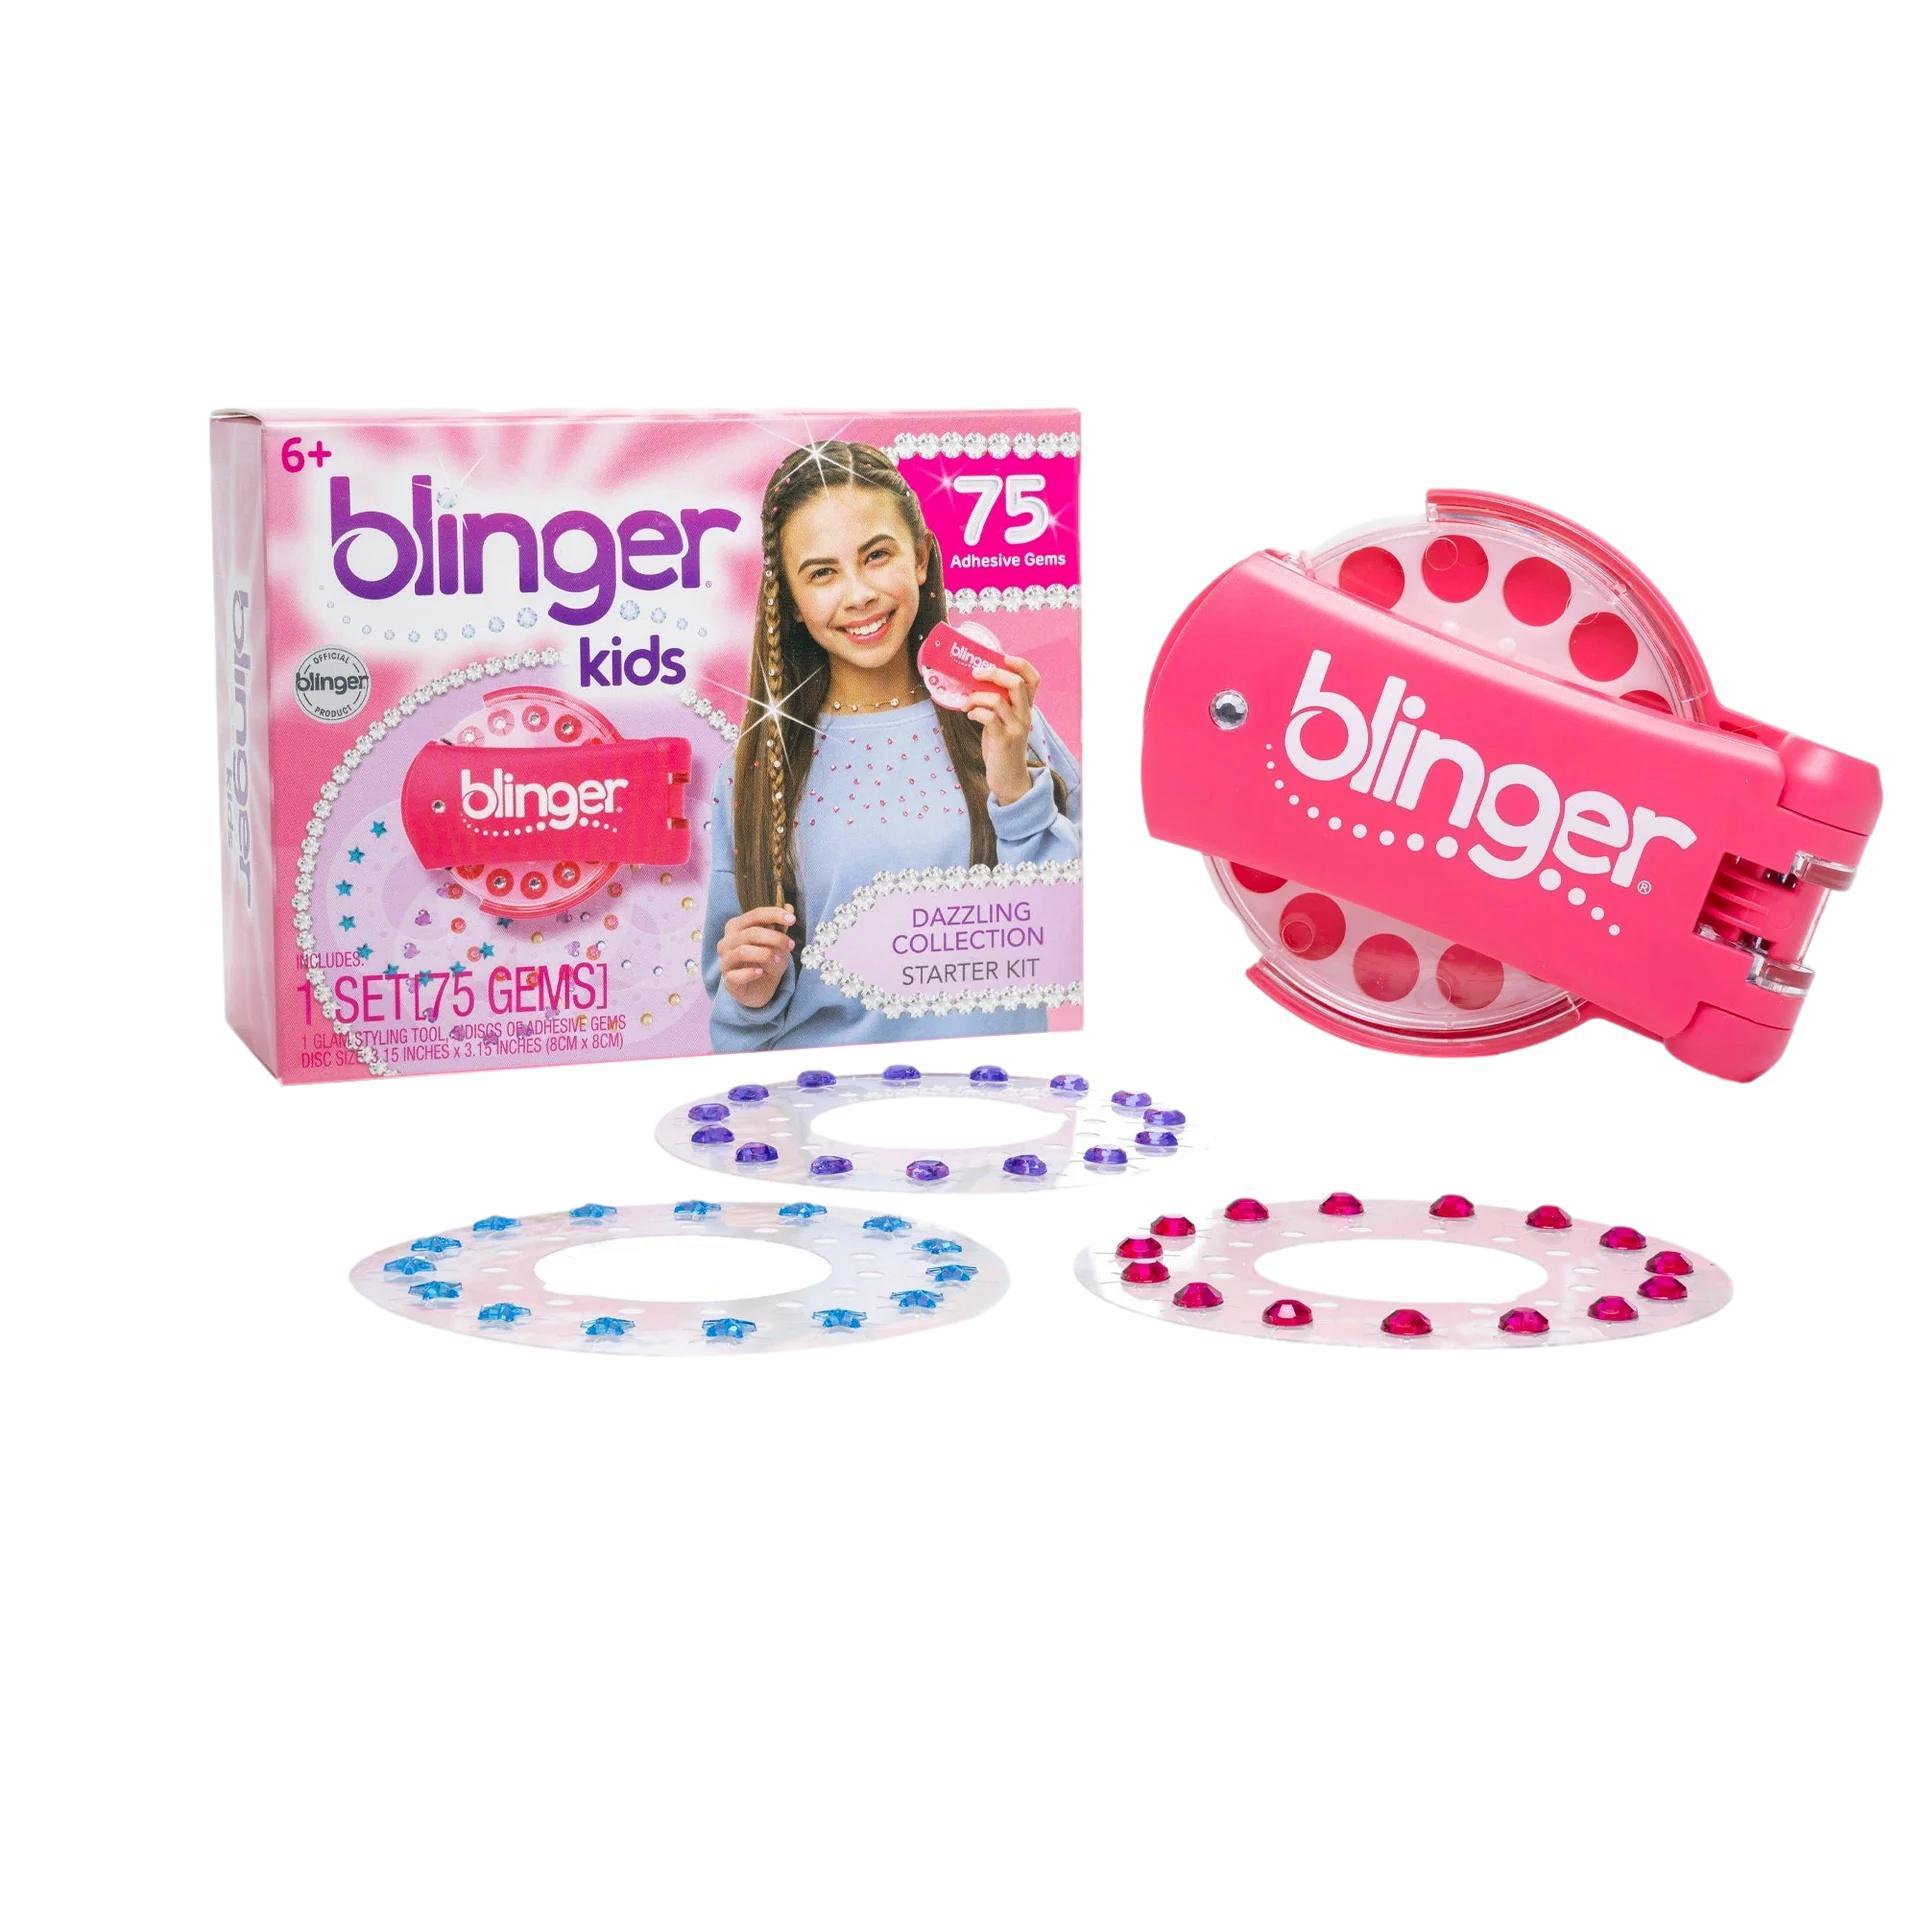  Blinger Kids Dazzling Collection Starter Kit